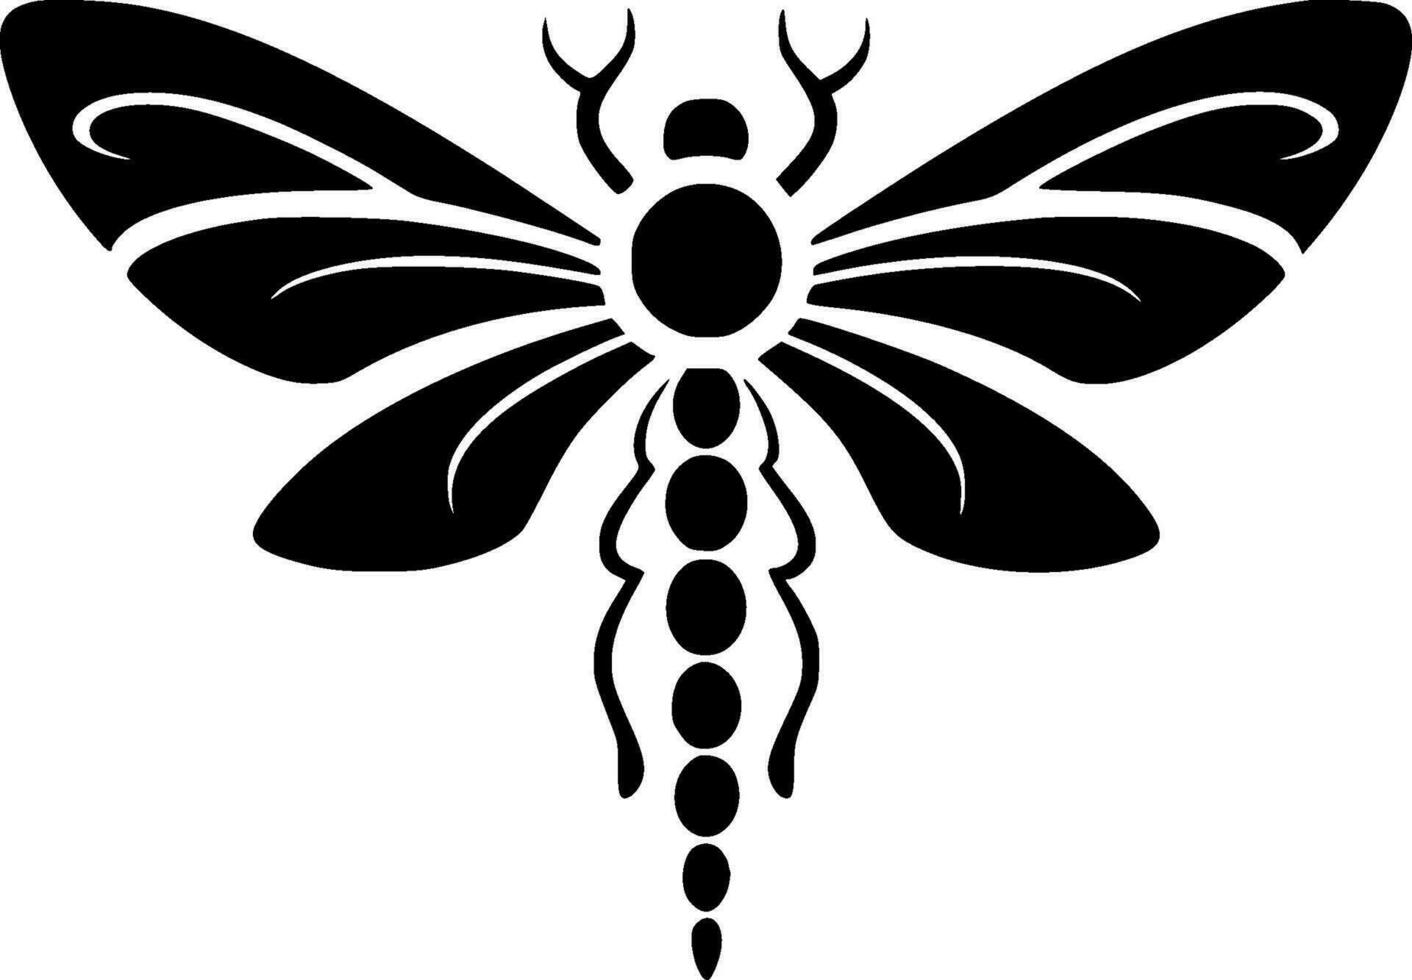 Libelle - - minimalistisch und eben Logo - - Vektor Illustration